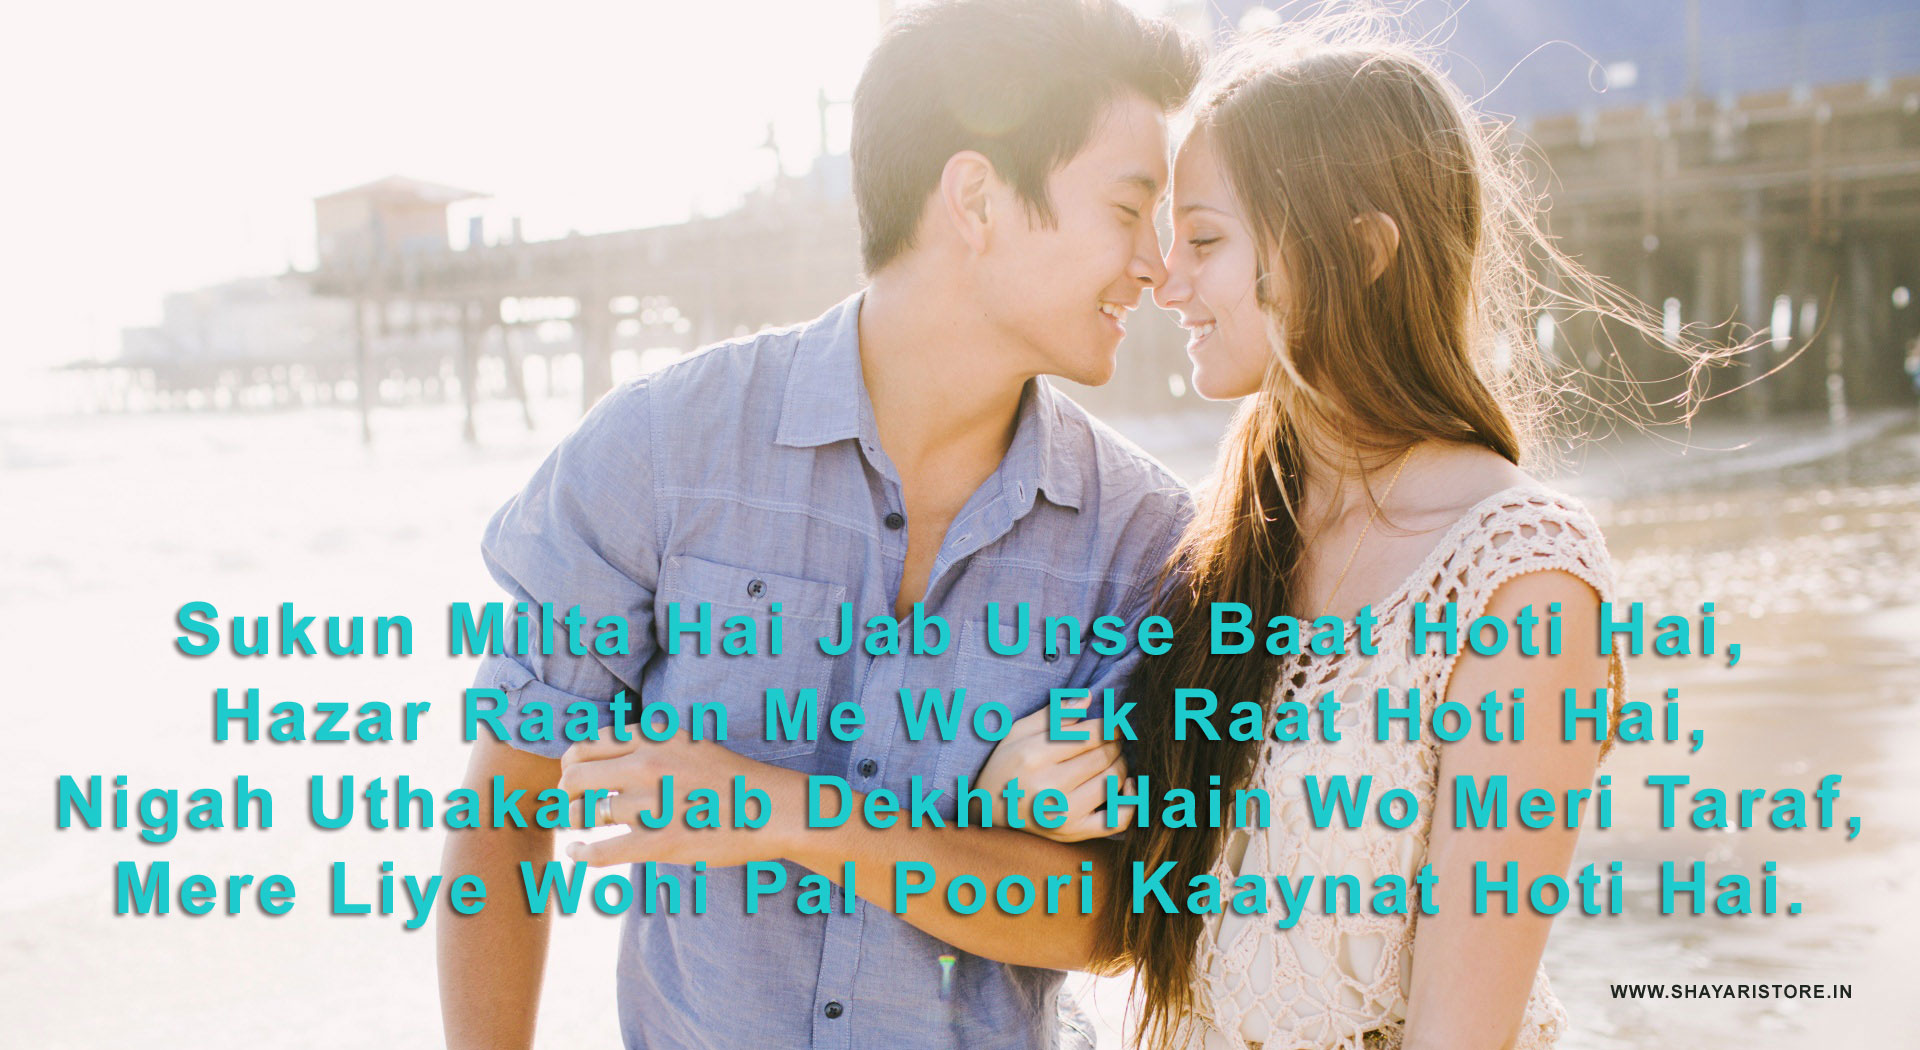 Love Shayari Wallpaper Download - Love Shayari Image Wallpaper Download , HD Wallpaper & Backgrounds